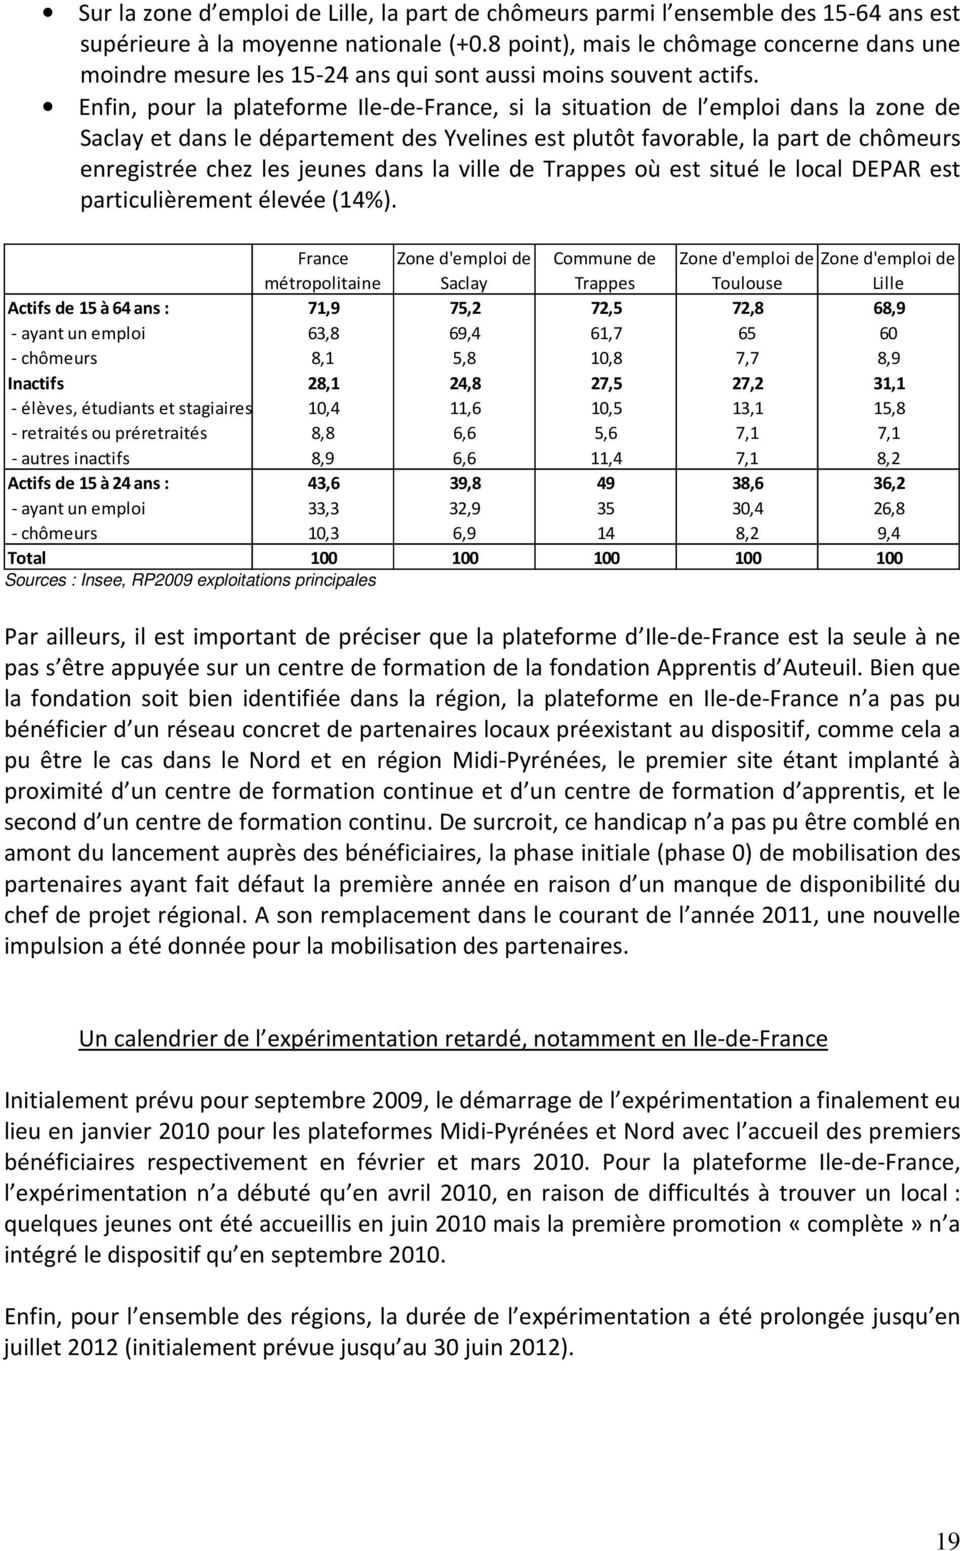 Enfin, pour la plateforme Ile-de-France, si la situation de l emploi dans la zone de Saclay et dans le département des Yvelines est plutôt favorable, la part de chômeurs enregistrée chez les jeunes